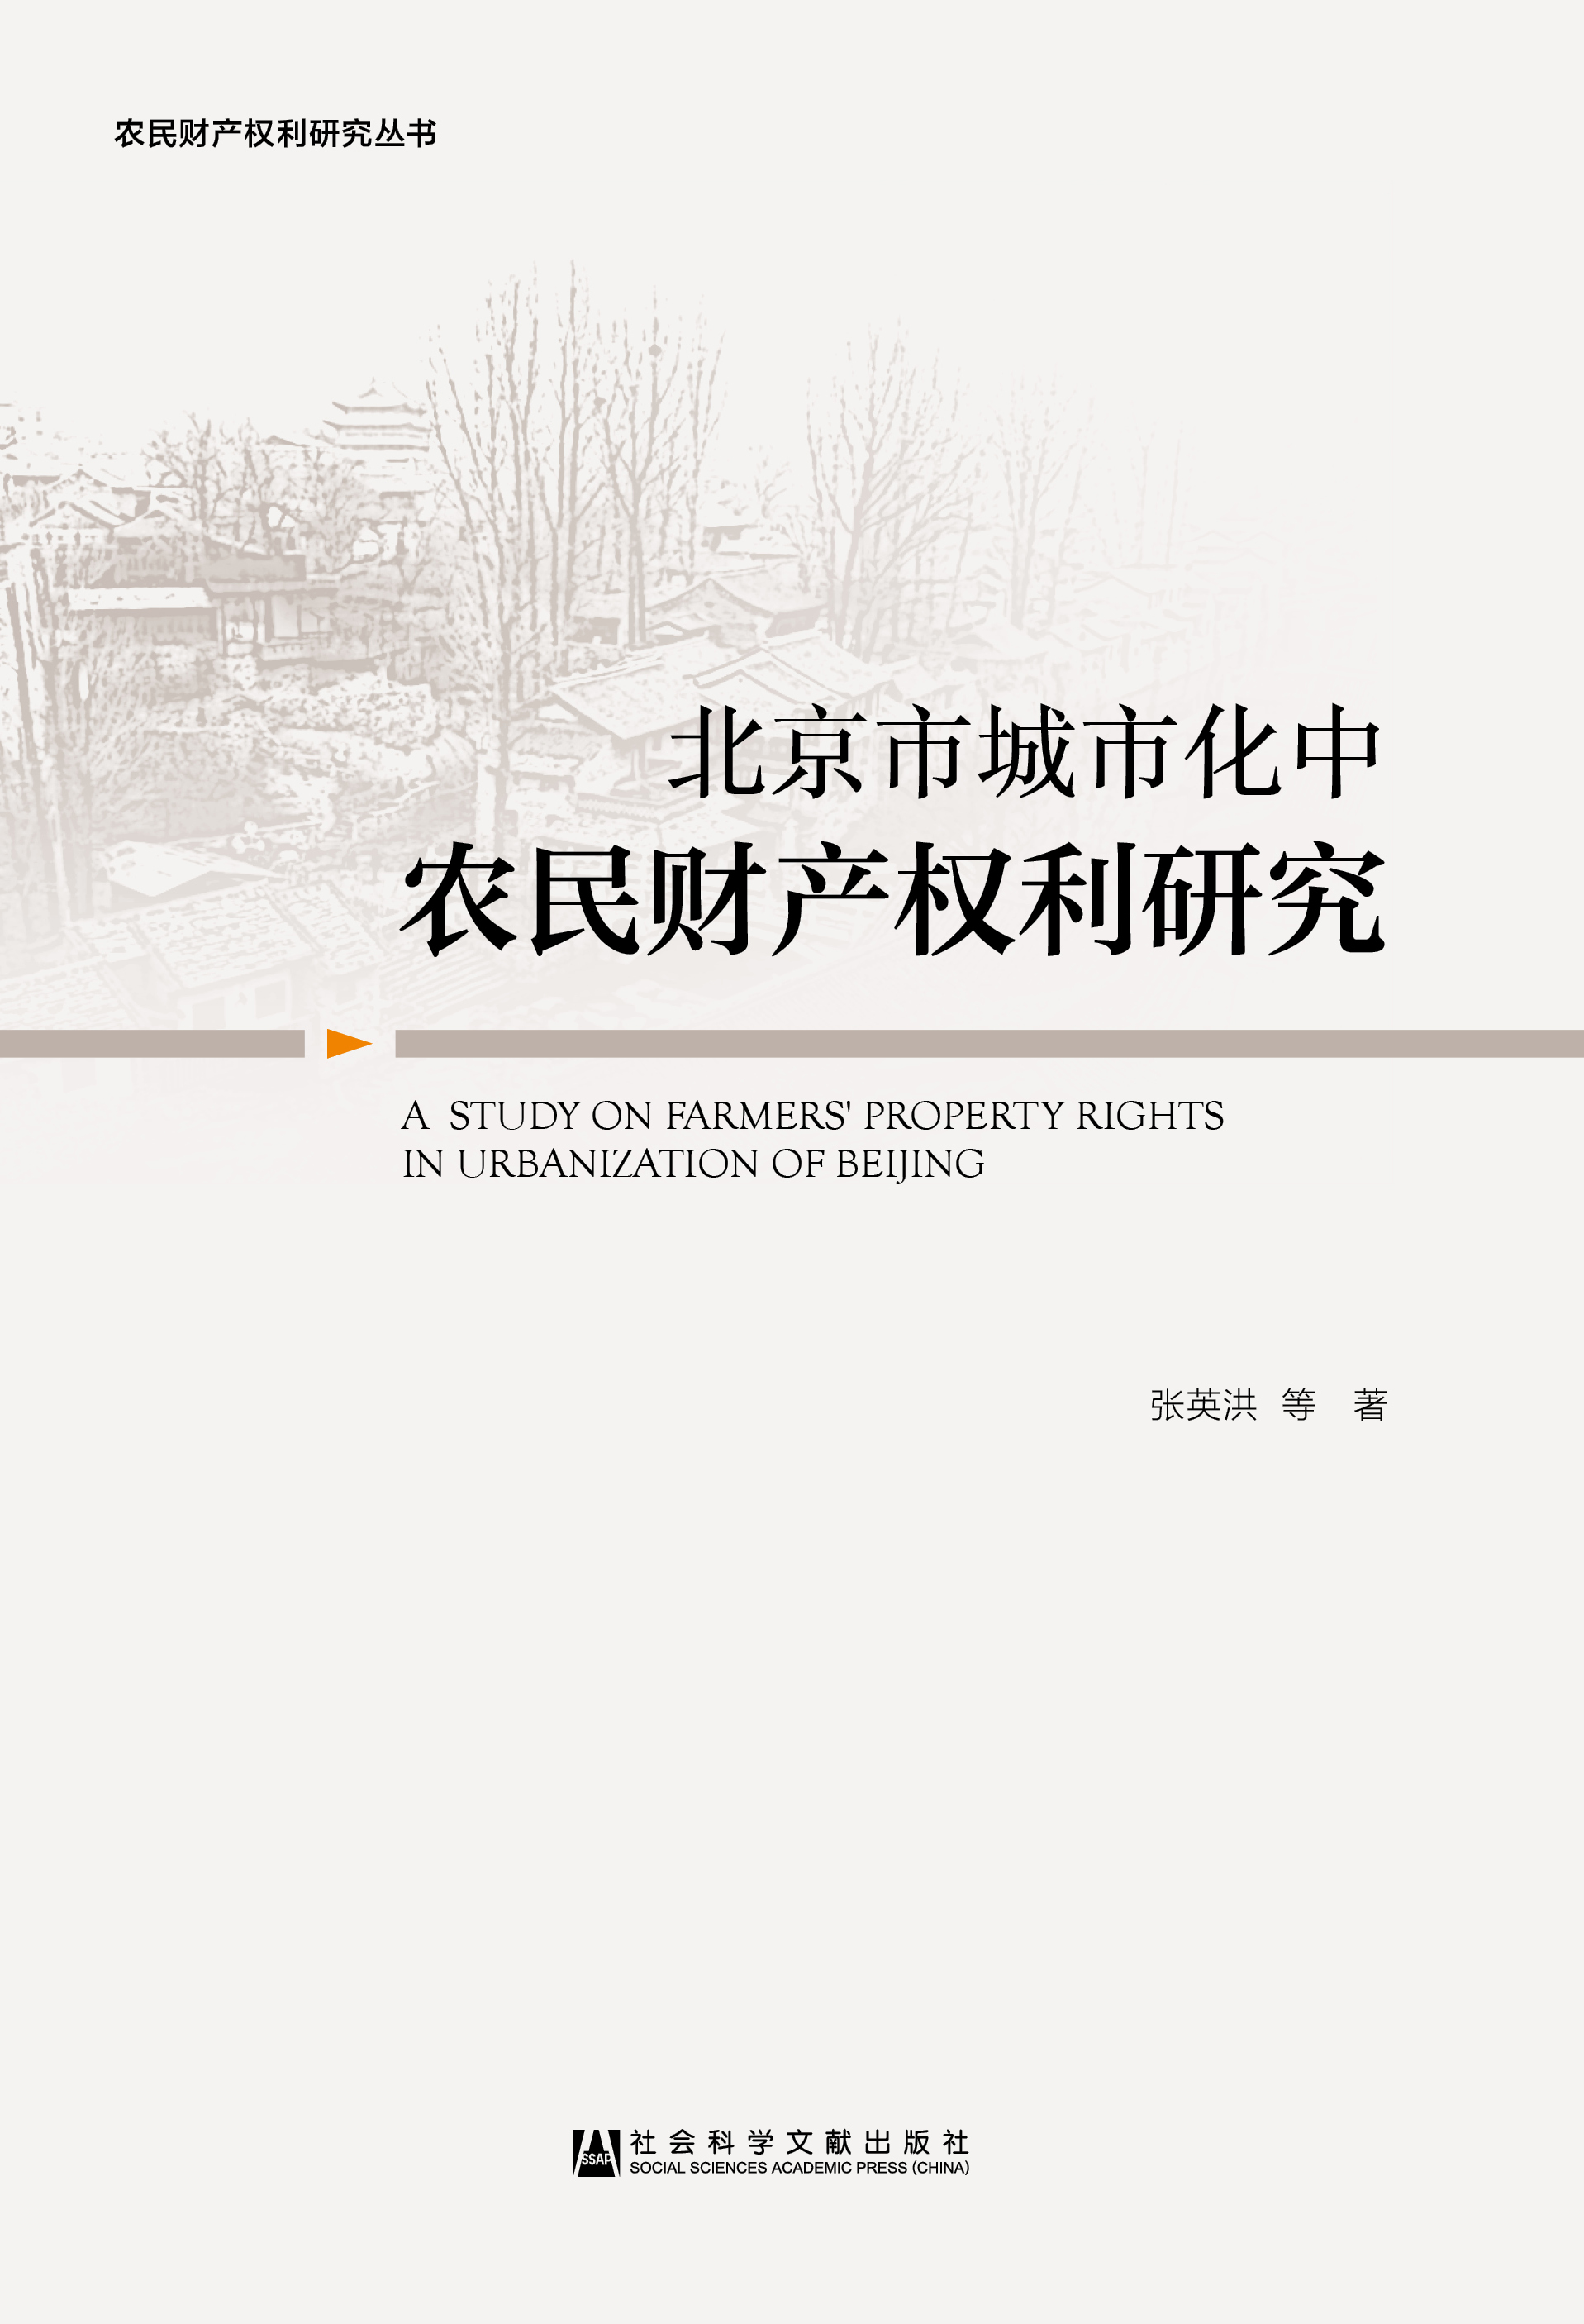 北京市城市化中农民财产权利研究